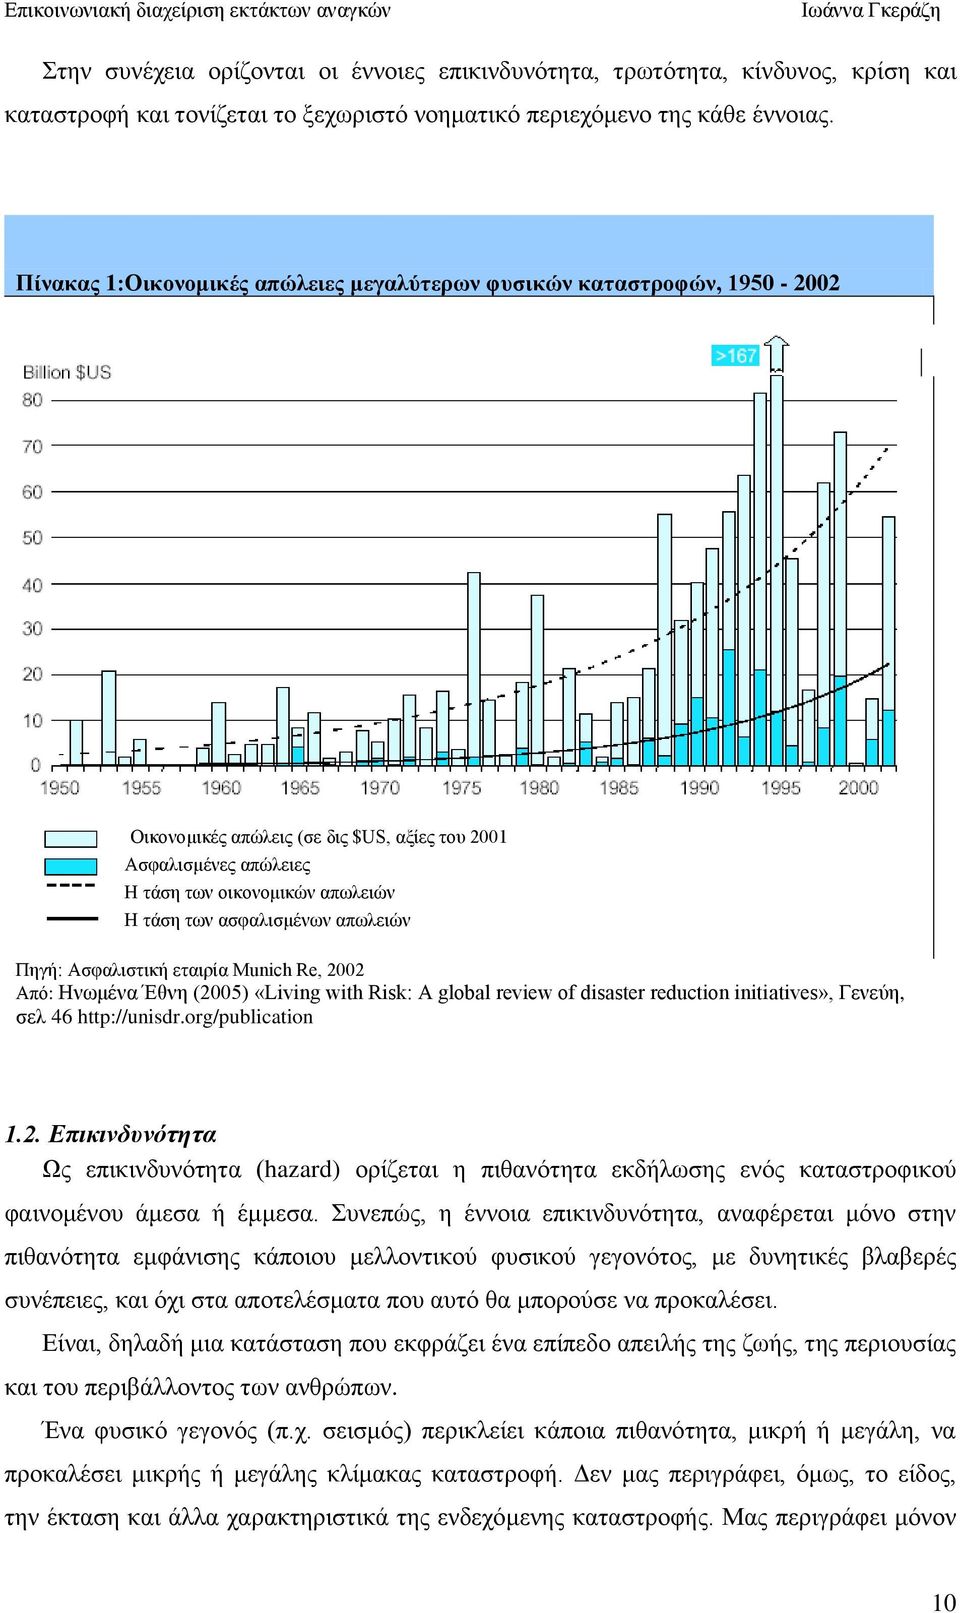 απσιεηψλ Πεγή: Αζθαιηζηηθή εηαηξία Munich Re, 2002 Απφ: Ζλσκέλα Έζλε (2005) «Living with Risk: A global review of disaster reduction initiatives», Γελεχε, ζει 46 http://unisdr.org/publication 1.2. Δπικινδςνόηηηα Χο επηθηλδπλφηεηα (hazard) νξίδεηαη ε πηζαλφηεηα εθδήισζεο ελφο θαηαζηξνθηθνχ θαηλνκέλνπ άκεζα ή έκκεζα.